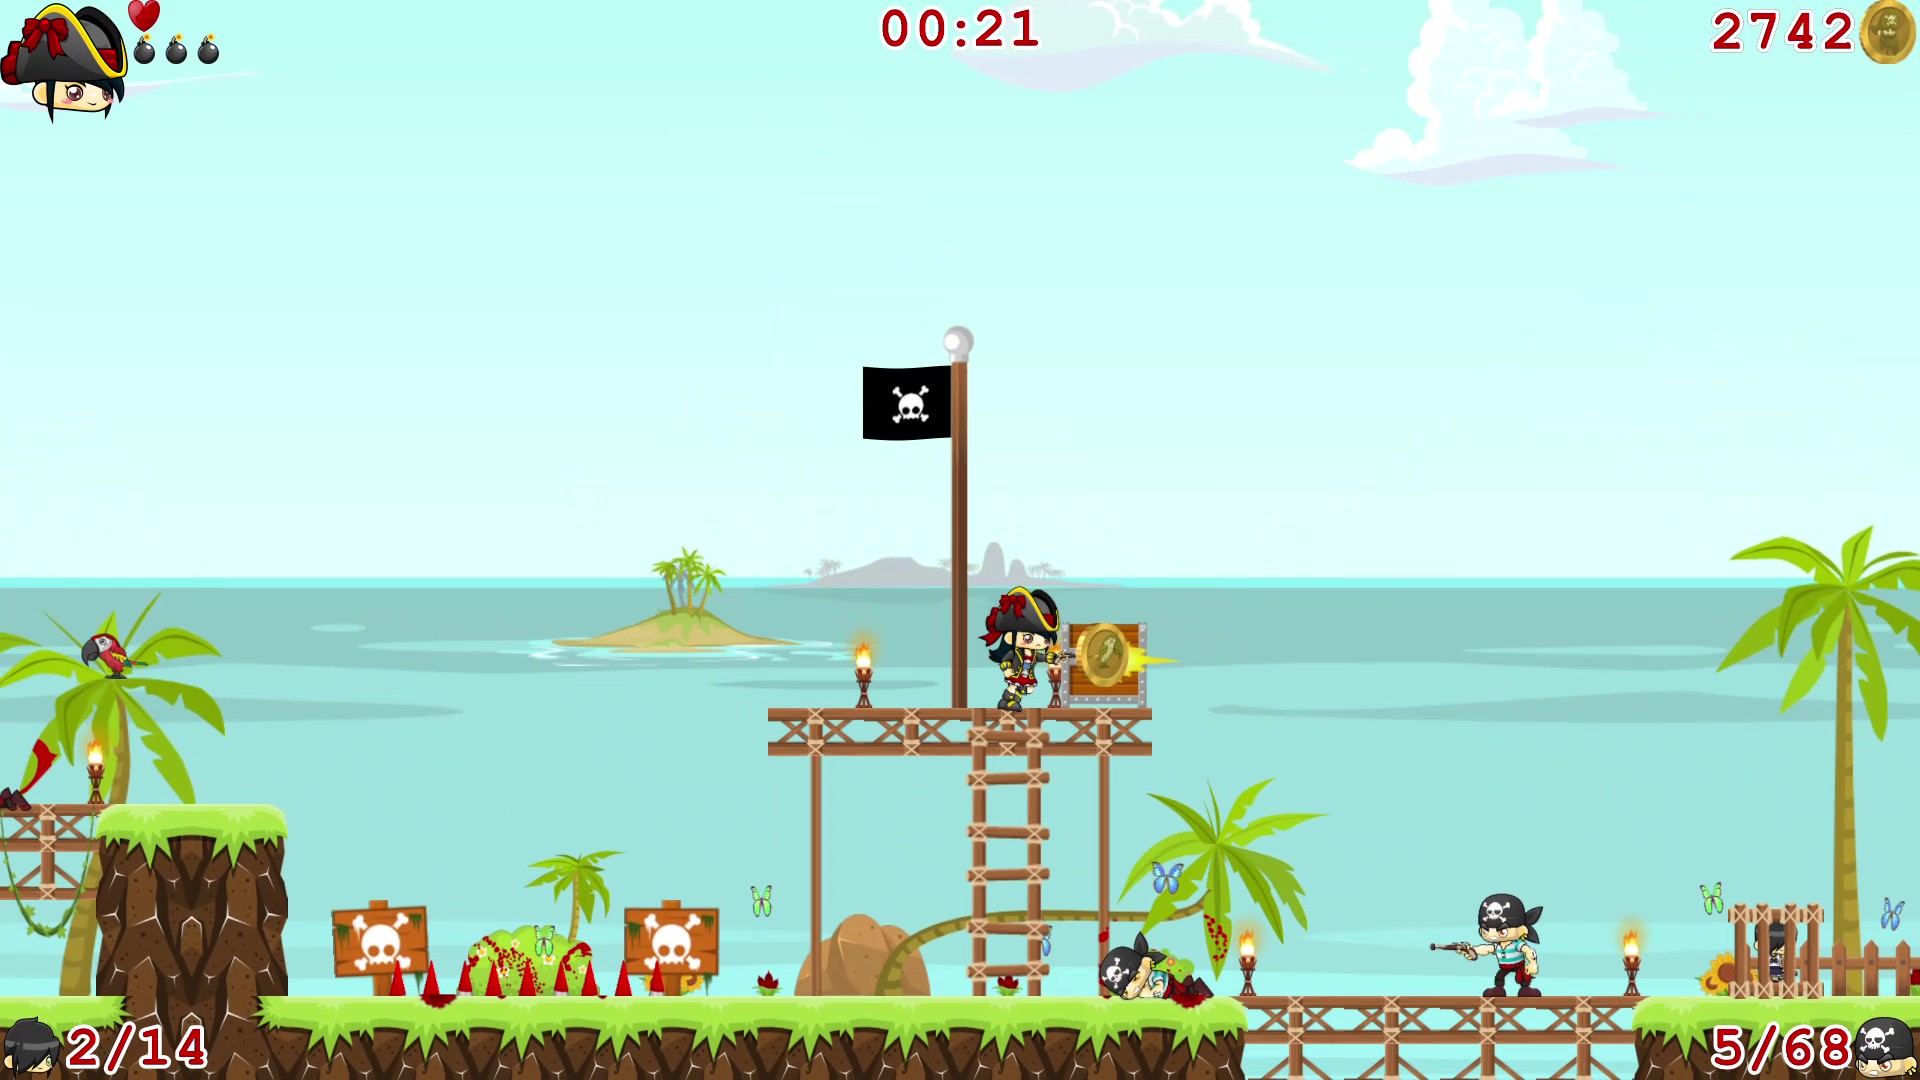 Pirate Island Rescue screenshot